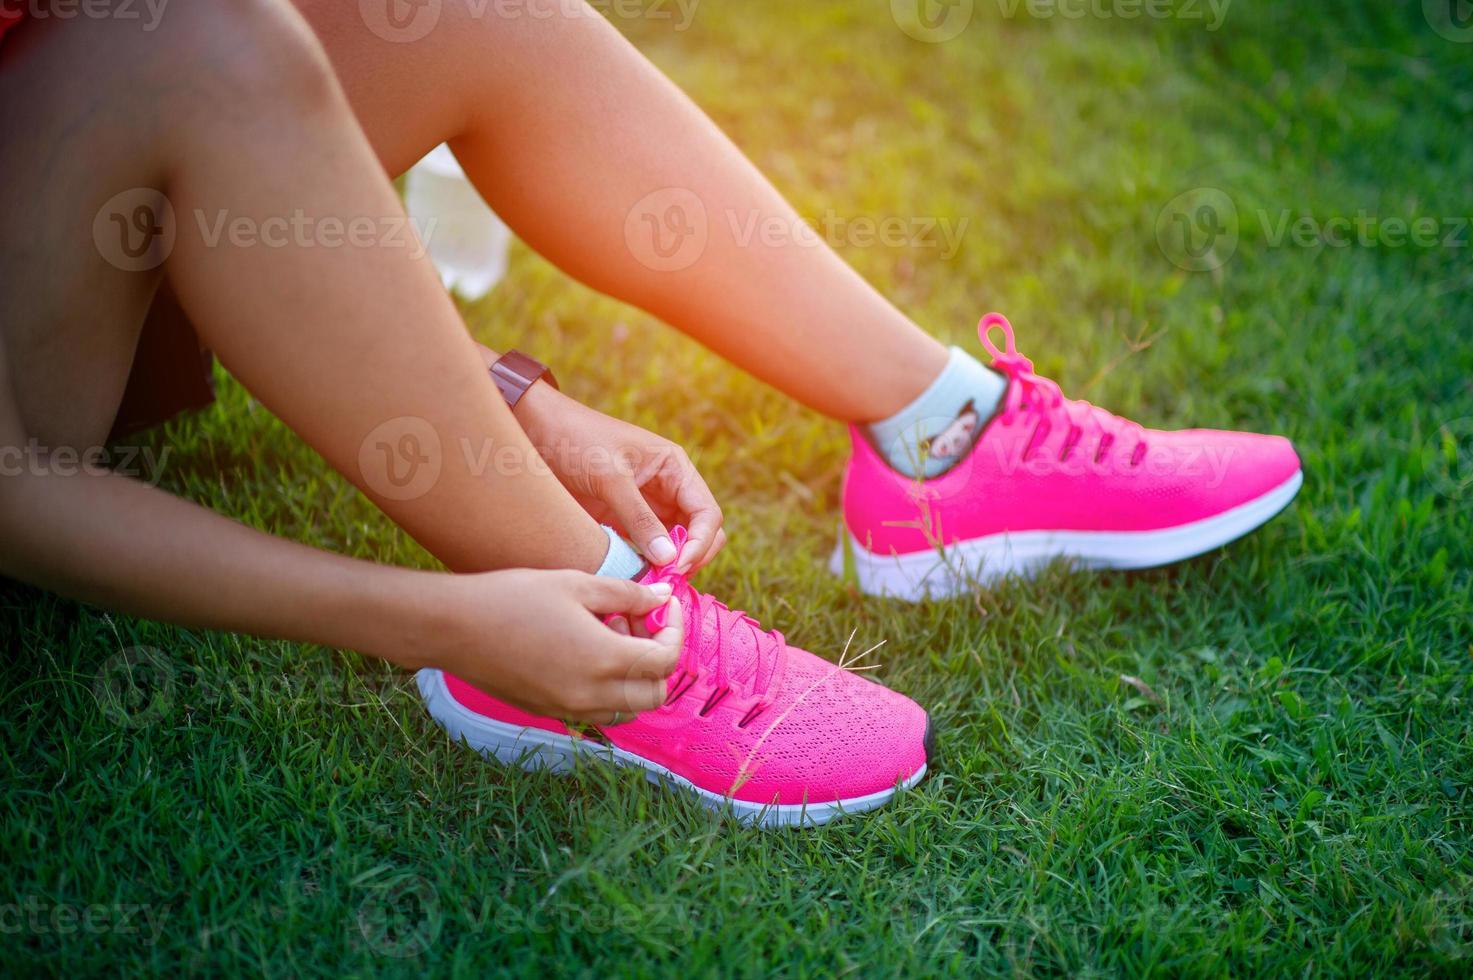 idrottare knyter skor innan de tränar för god hälsa. foto